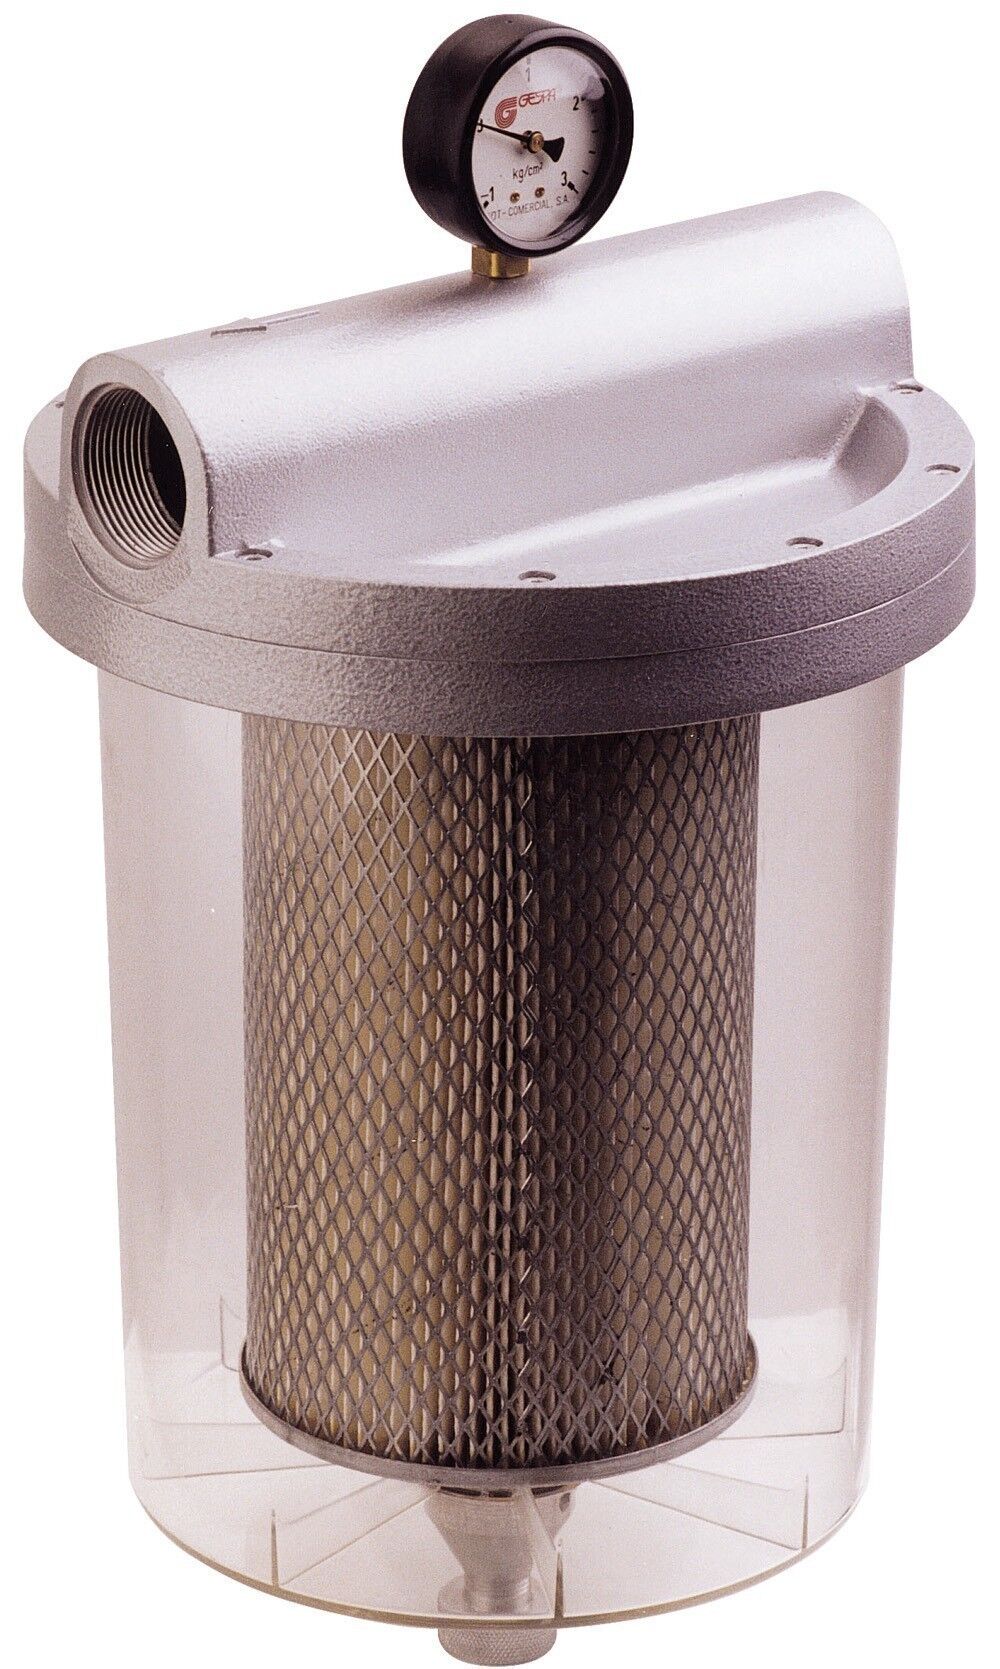 FG-150 · Фильтр для бензина и ДТ с влагоотделением, прозрачная колба, 5 µm GESPASA